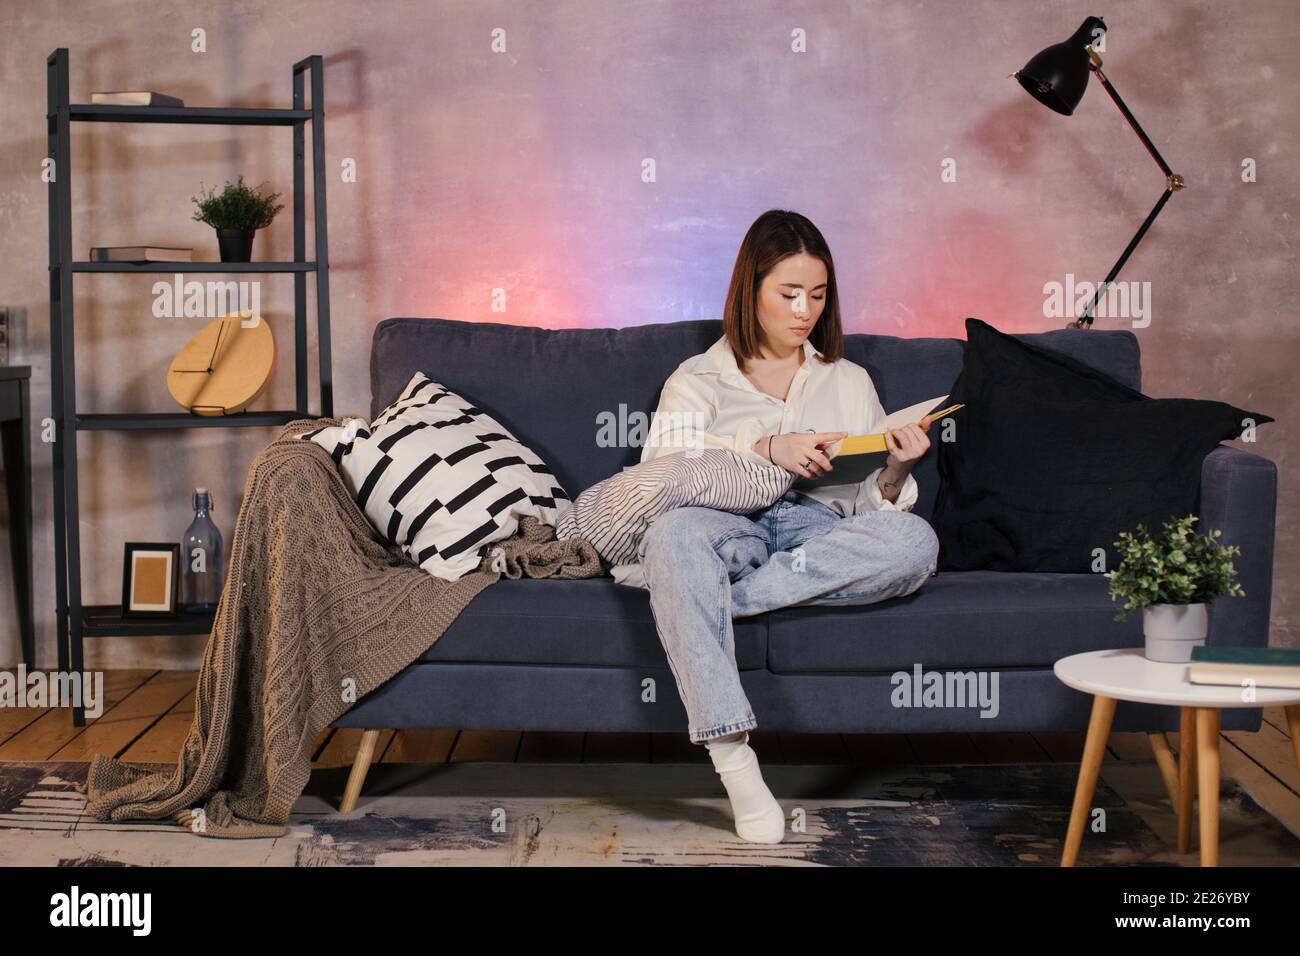 Giovane ragazza asiatica che legge un libro. La ragazza è seduta sul divano. Camera accogliente. Foto Stock